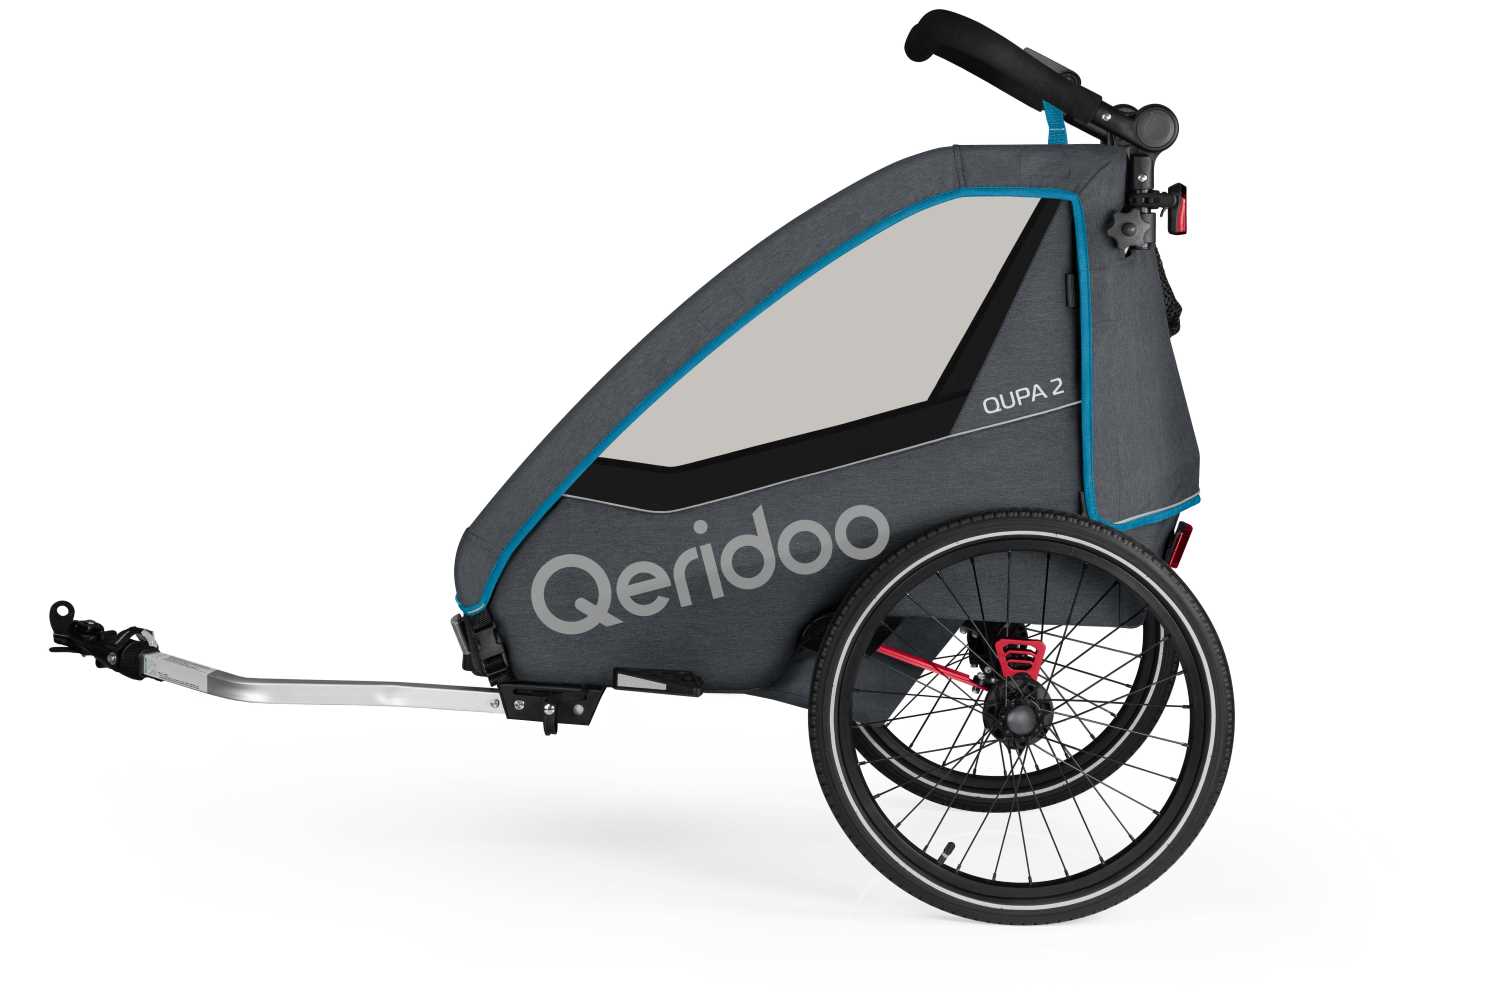 Produktbild von Qeridoo Qupa 2 (2023), blau (Q-QUP2-23-BL), Zweisitzer Kinderfahrradanhänger mit Blattfeder Dämpfsystem